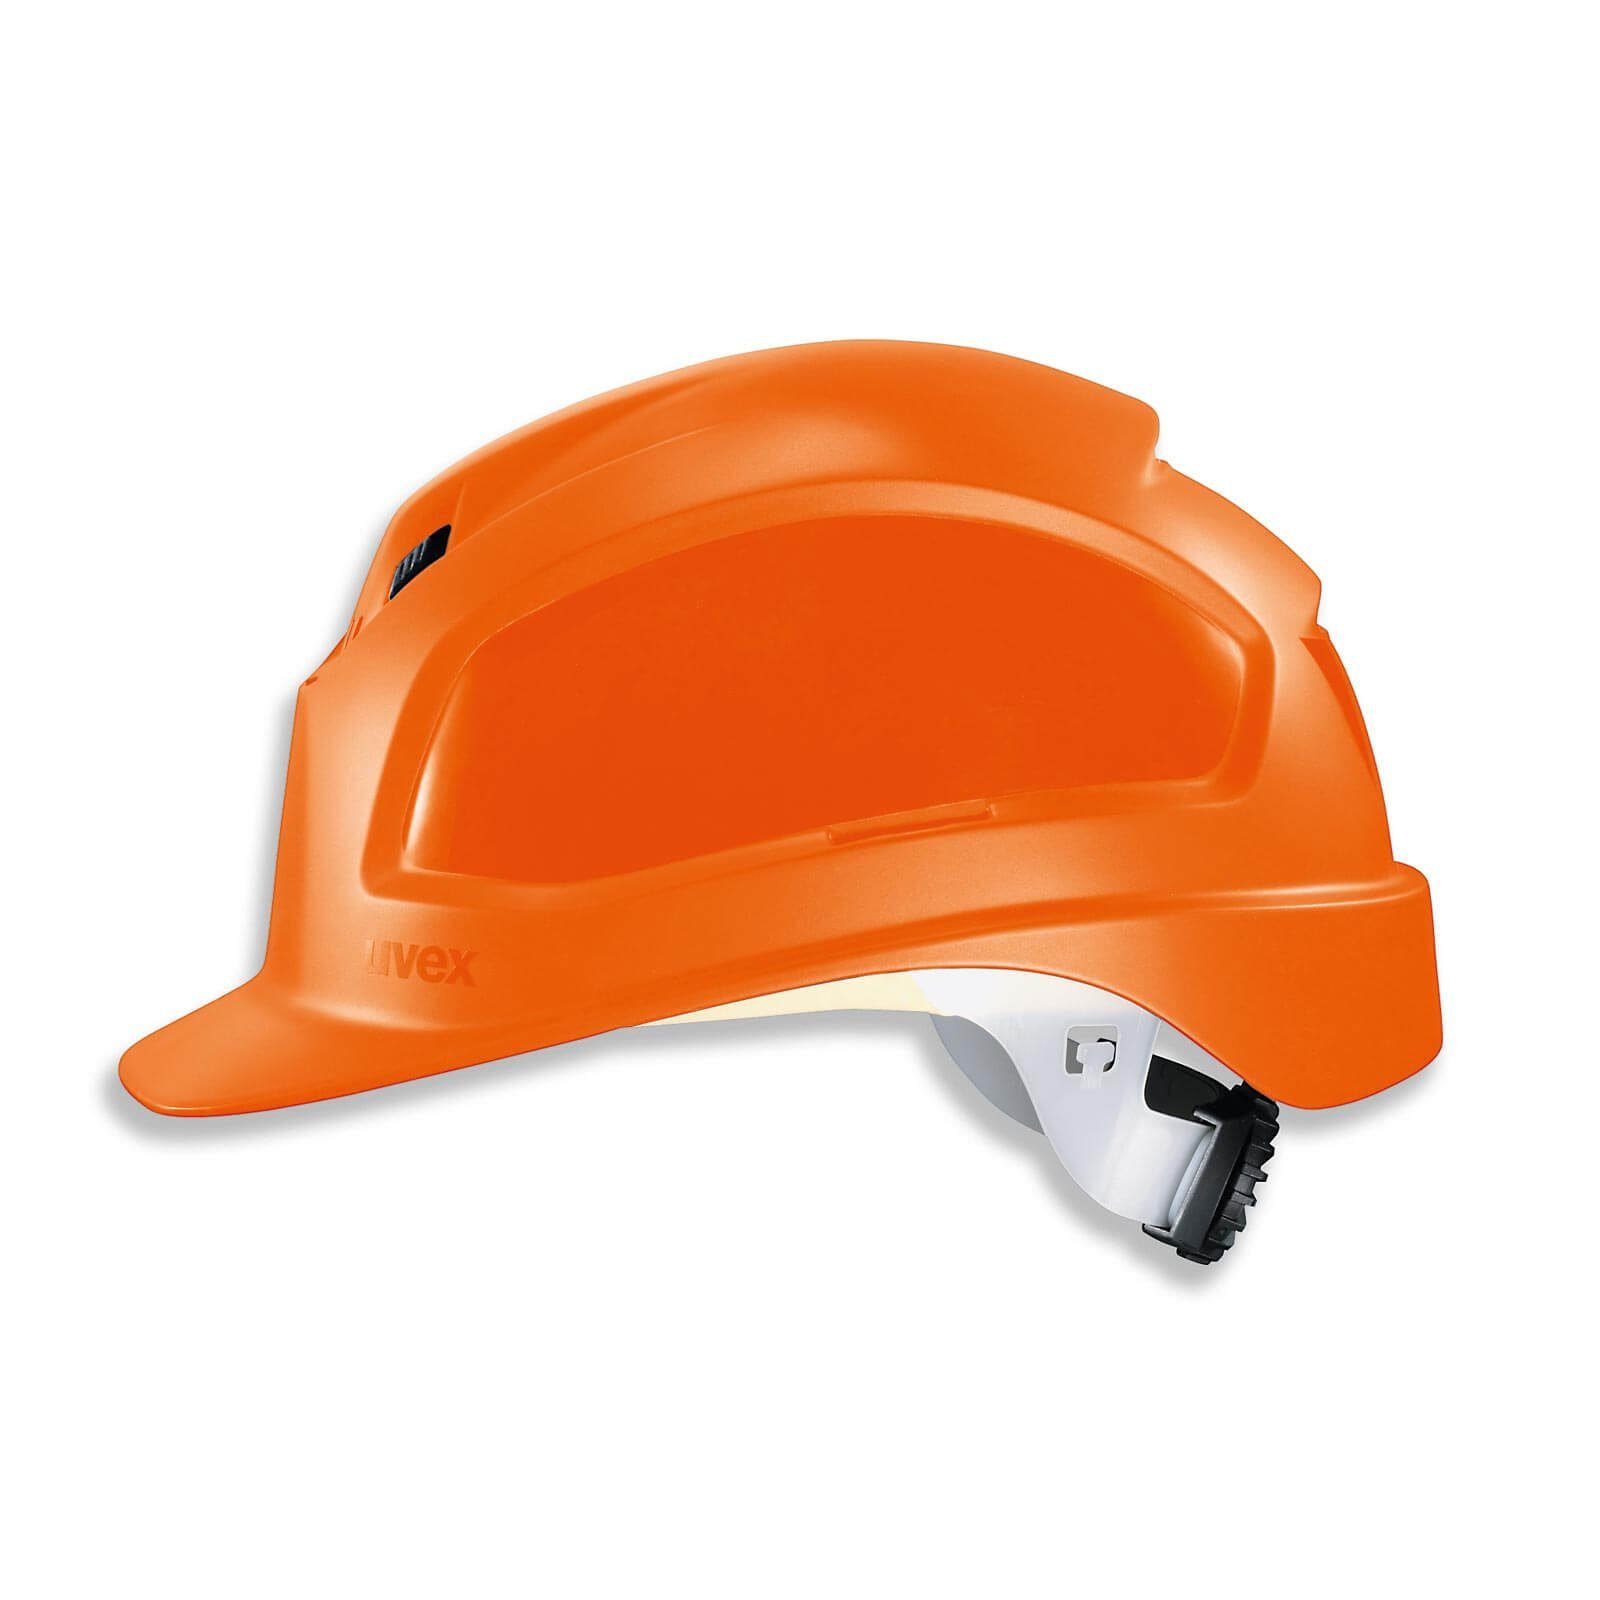 Uvex Schutzhelm orange B-WR Arbeitsschutz-Helm, - pheos Baustellenhelm, Bauhelm